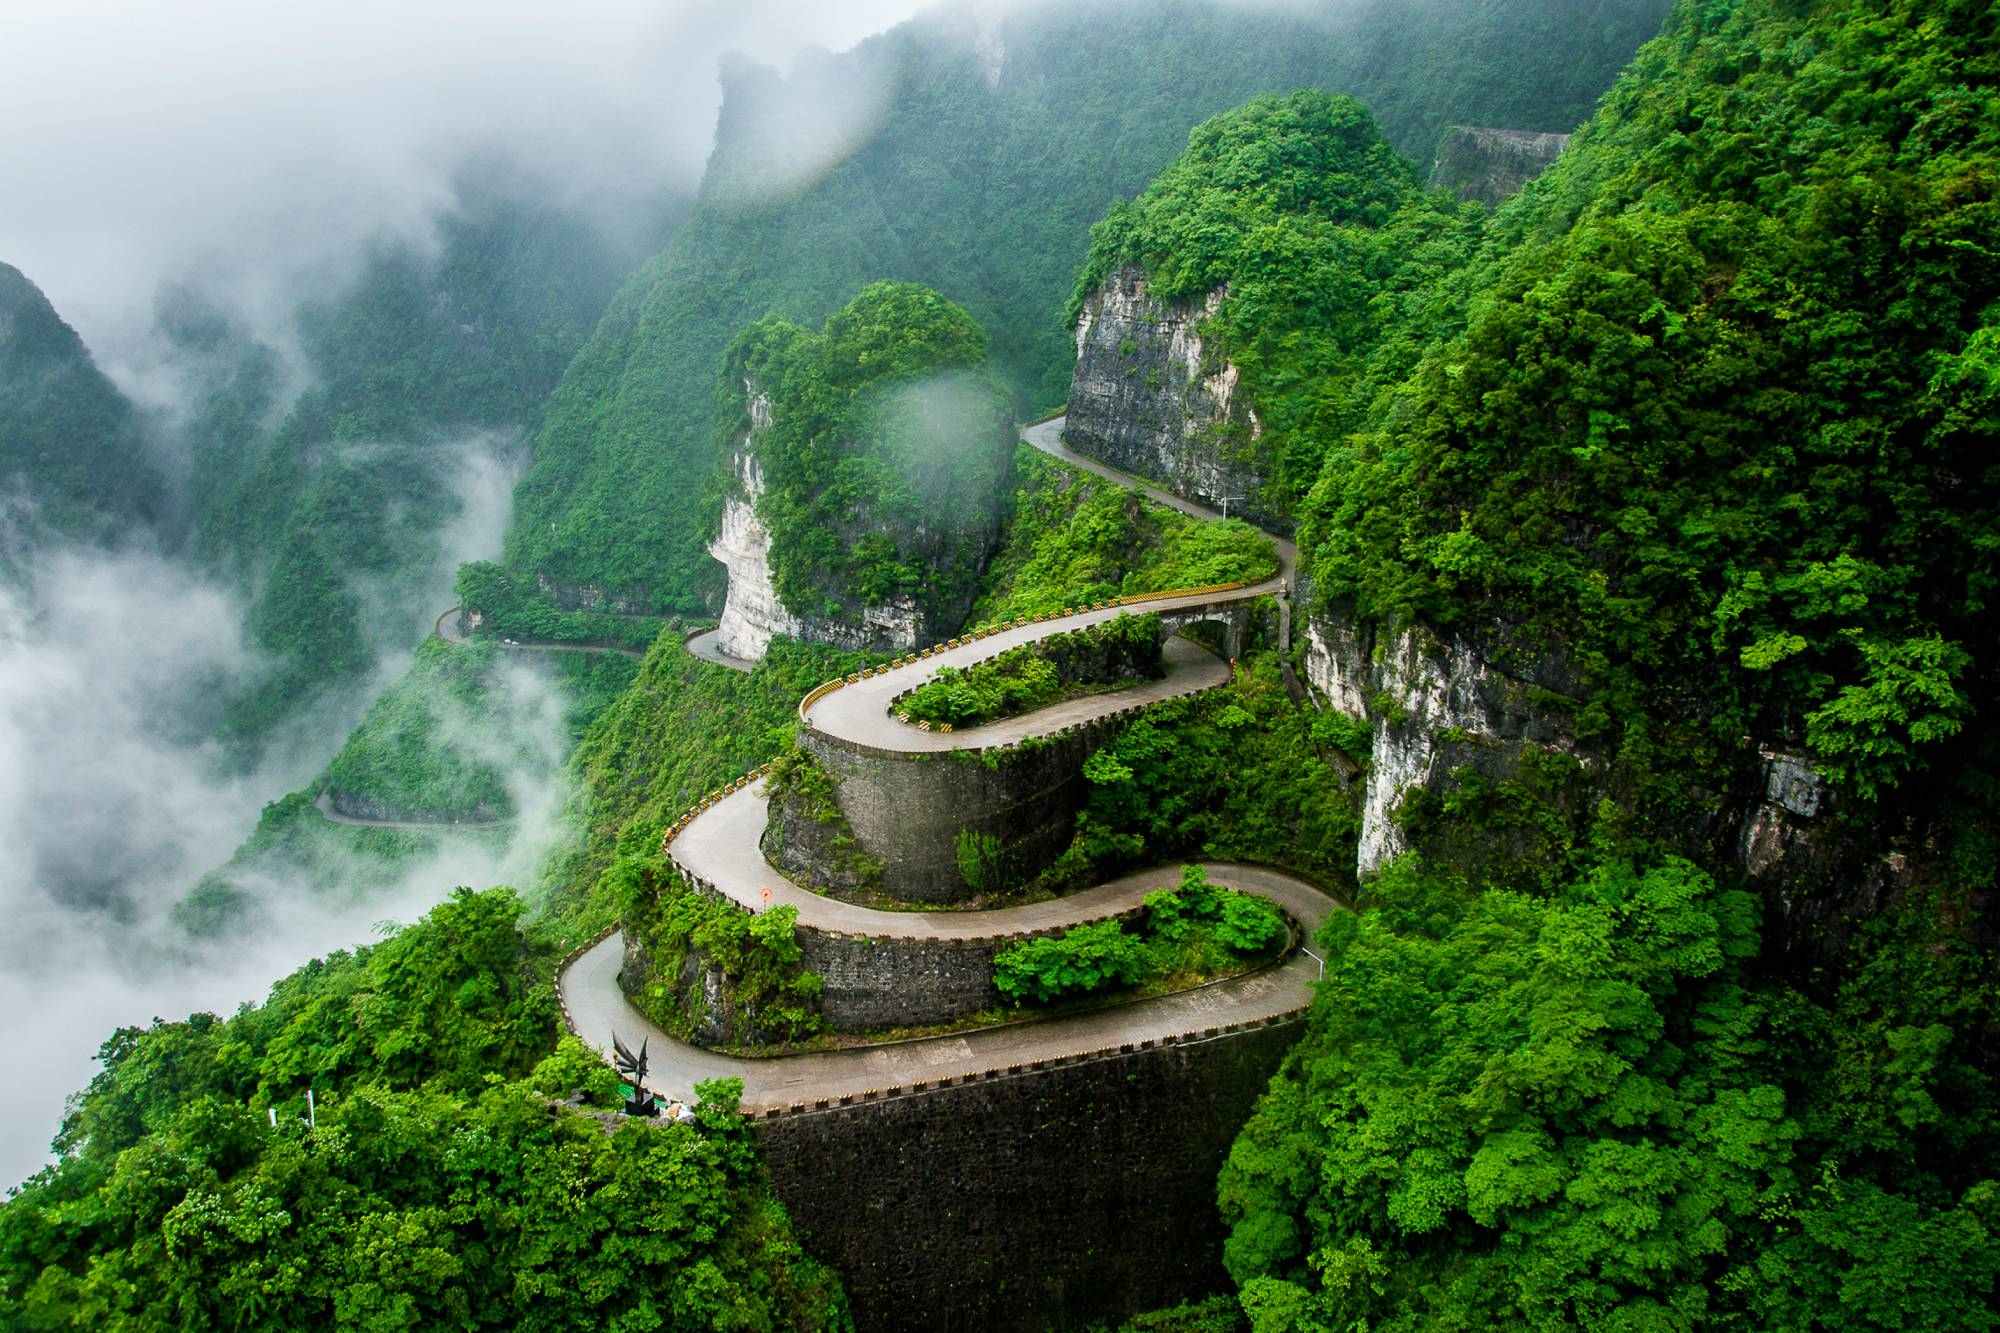 Die kurvenreiche Straße des Tianmen Mountain National Park (Zhangjiajie) im Wolkennebel, Provinz Hunan, China